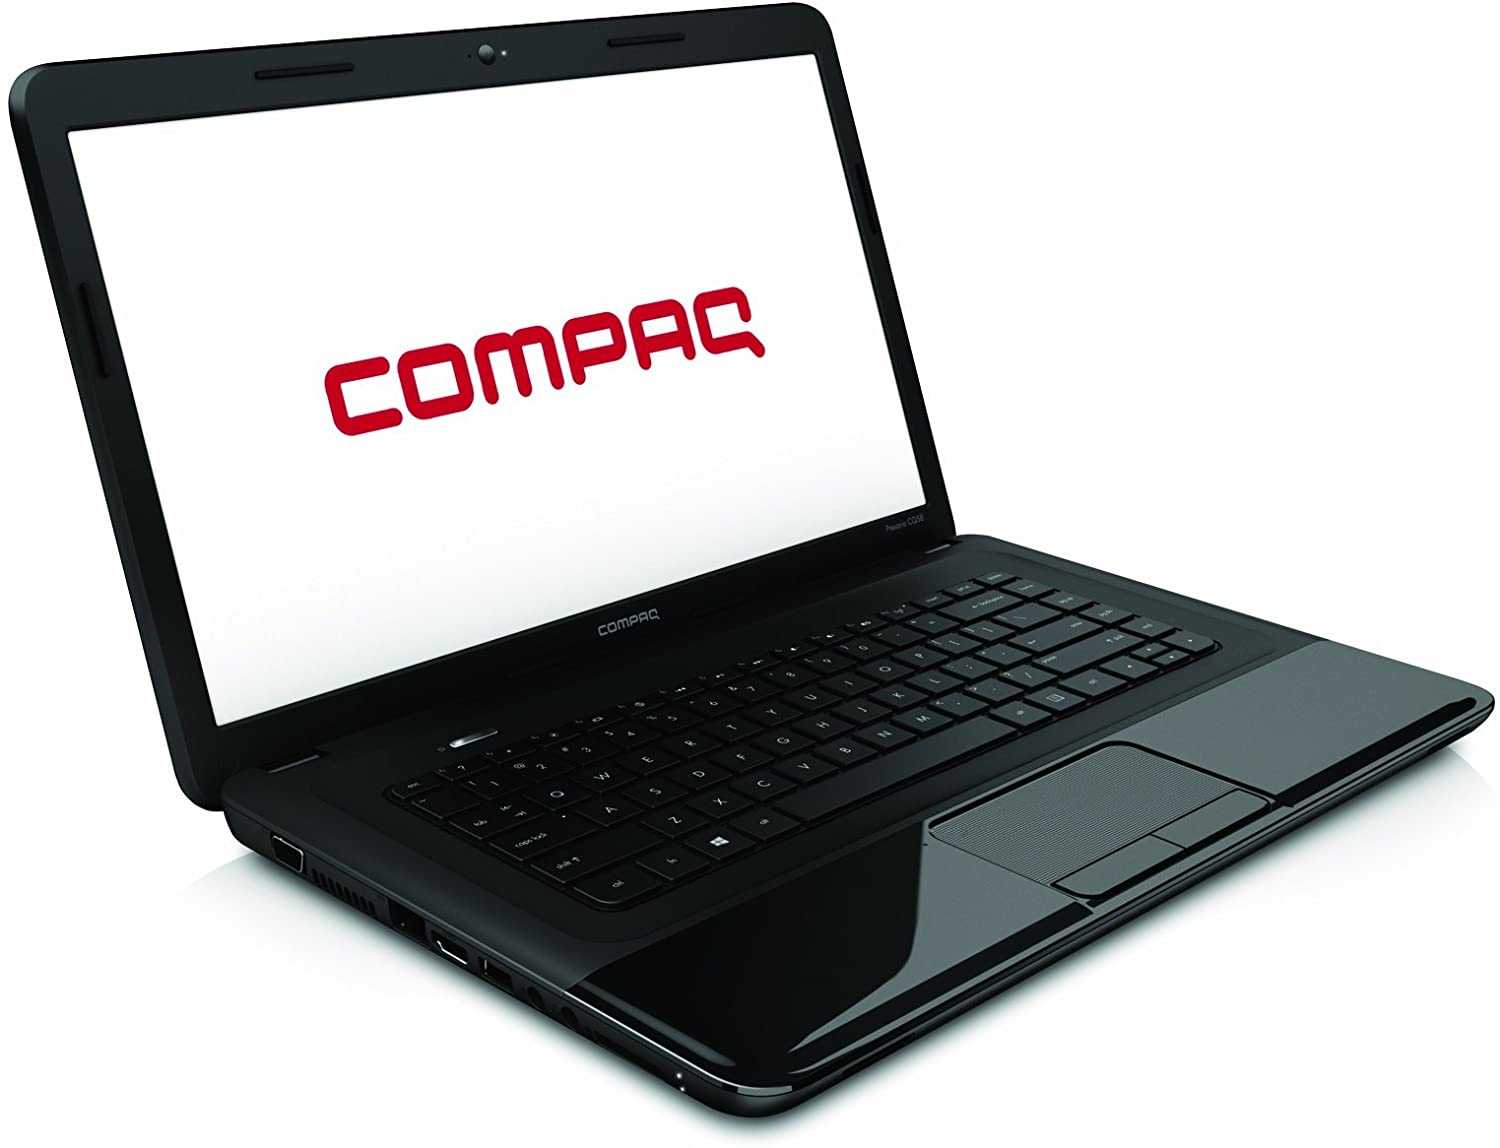 Ноутбук hp compaq cq58-d00sr — купить, цена и характеристики, отзывы